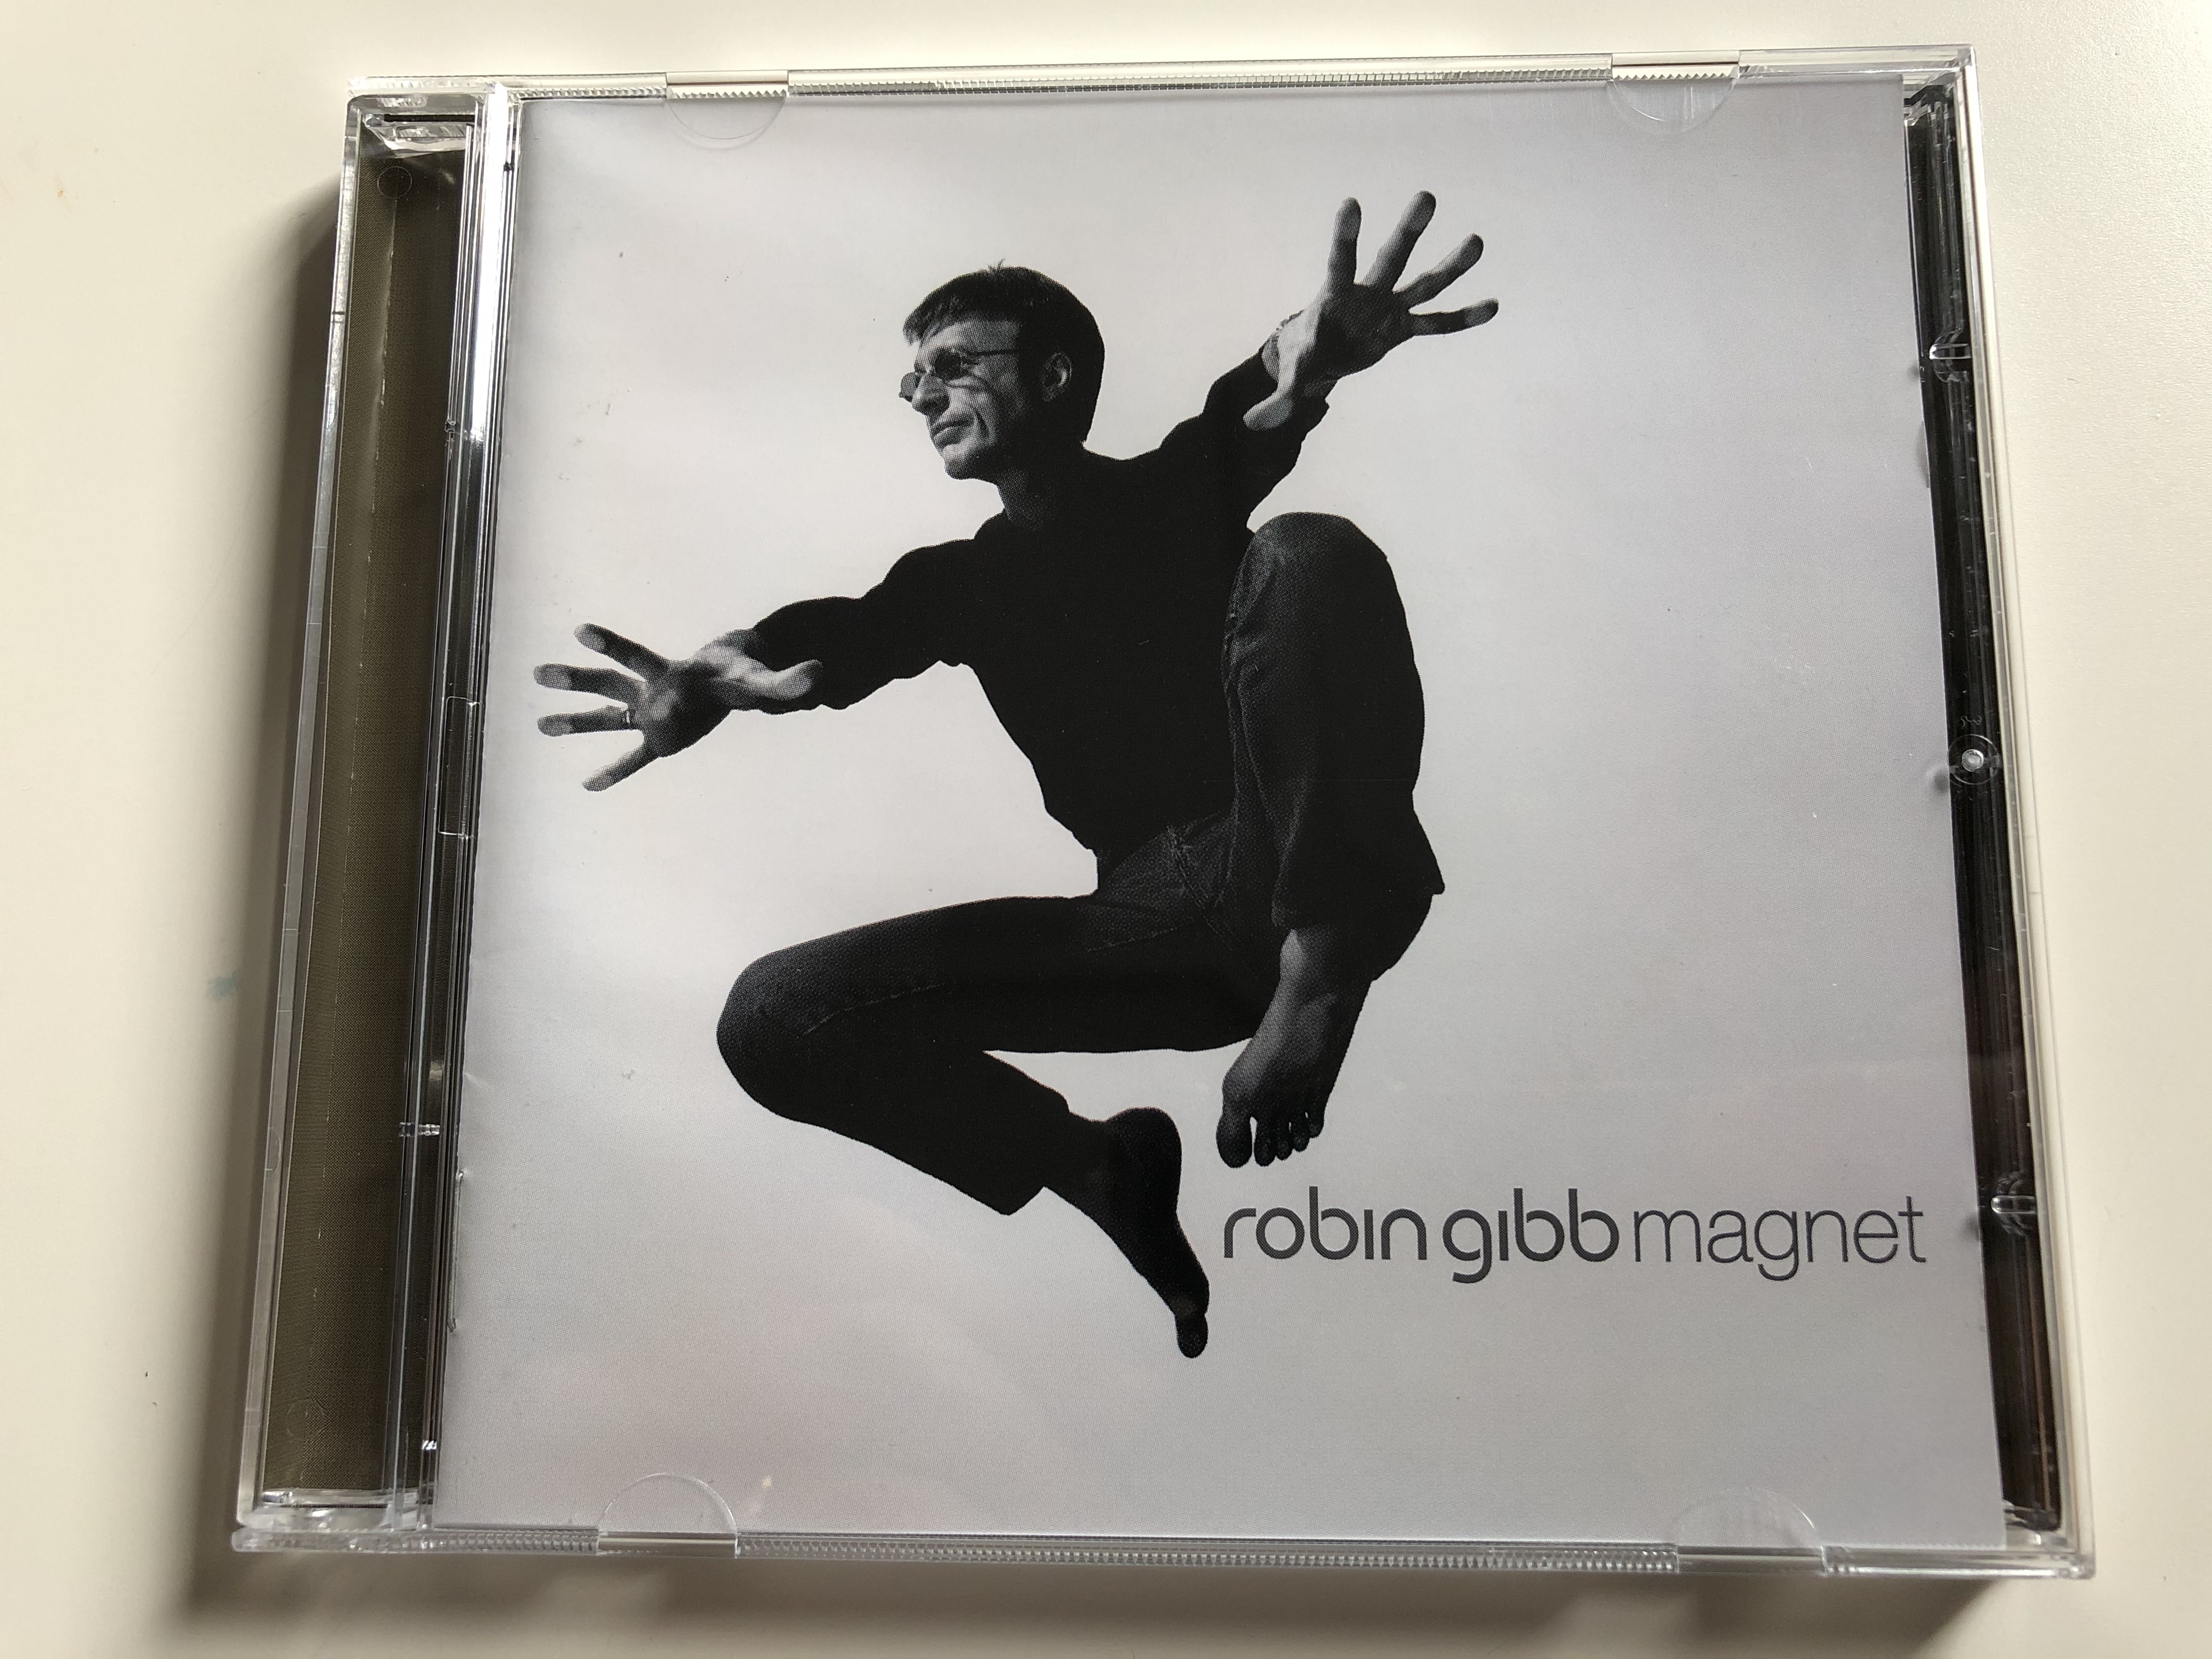 robin-gibb-magnet-warner-music-hungary-audio-cd-2003-5046-64759-2-1-.jpg